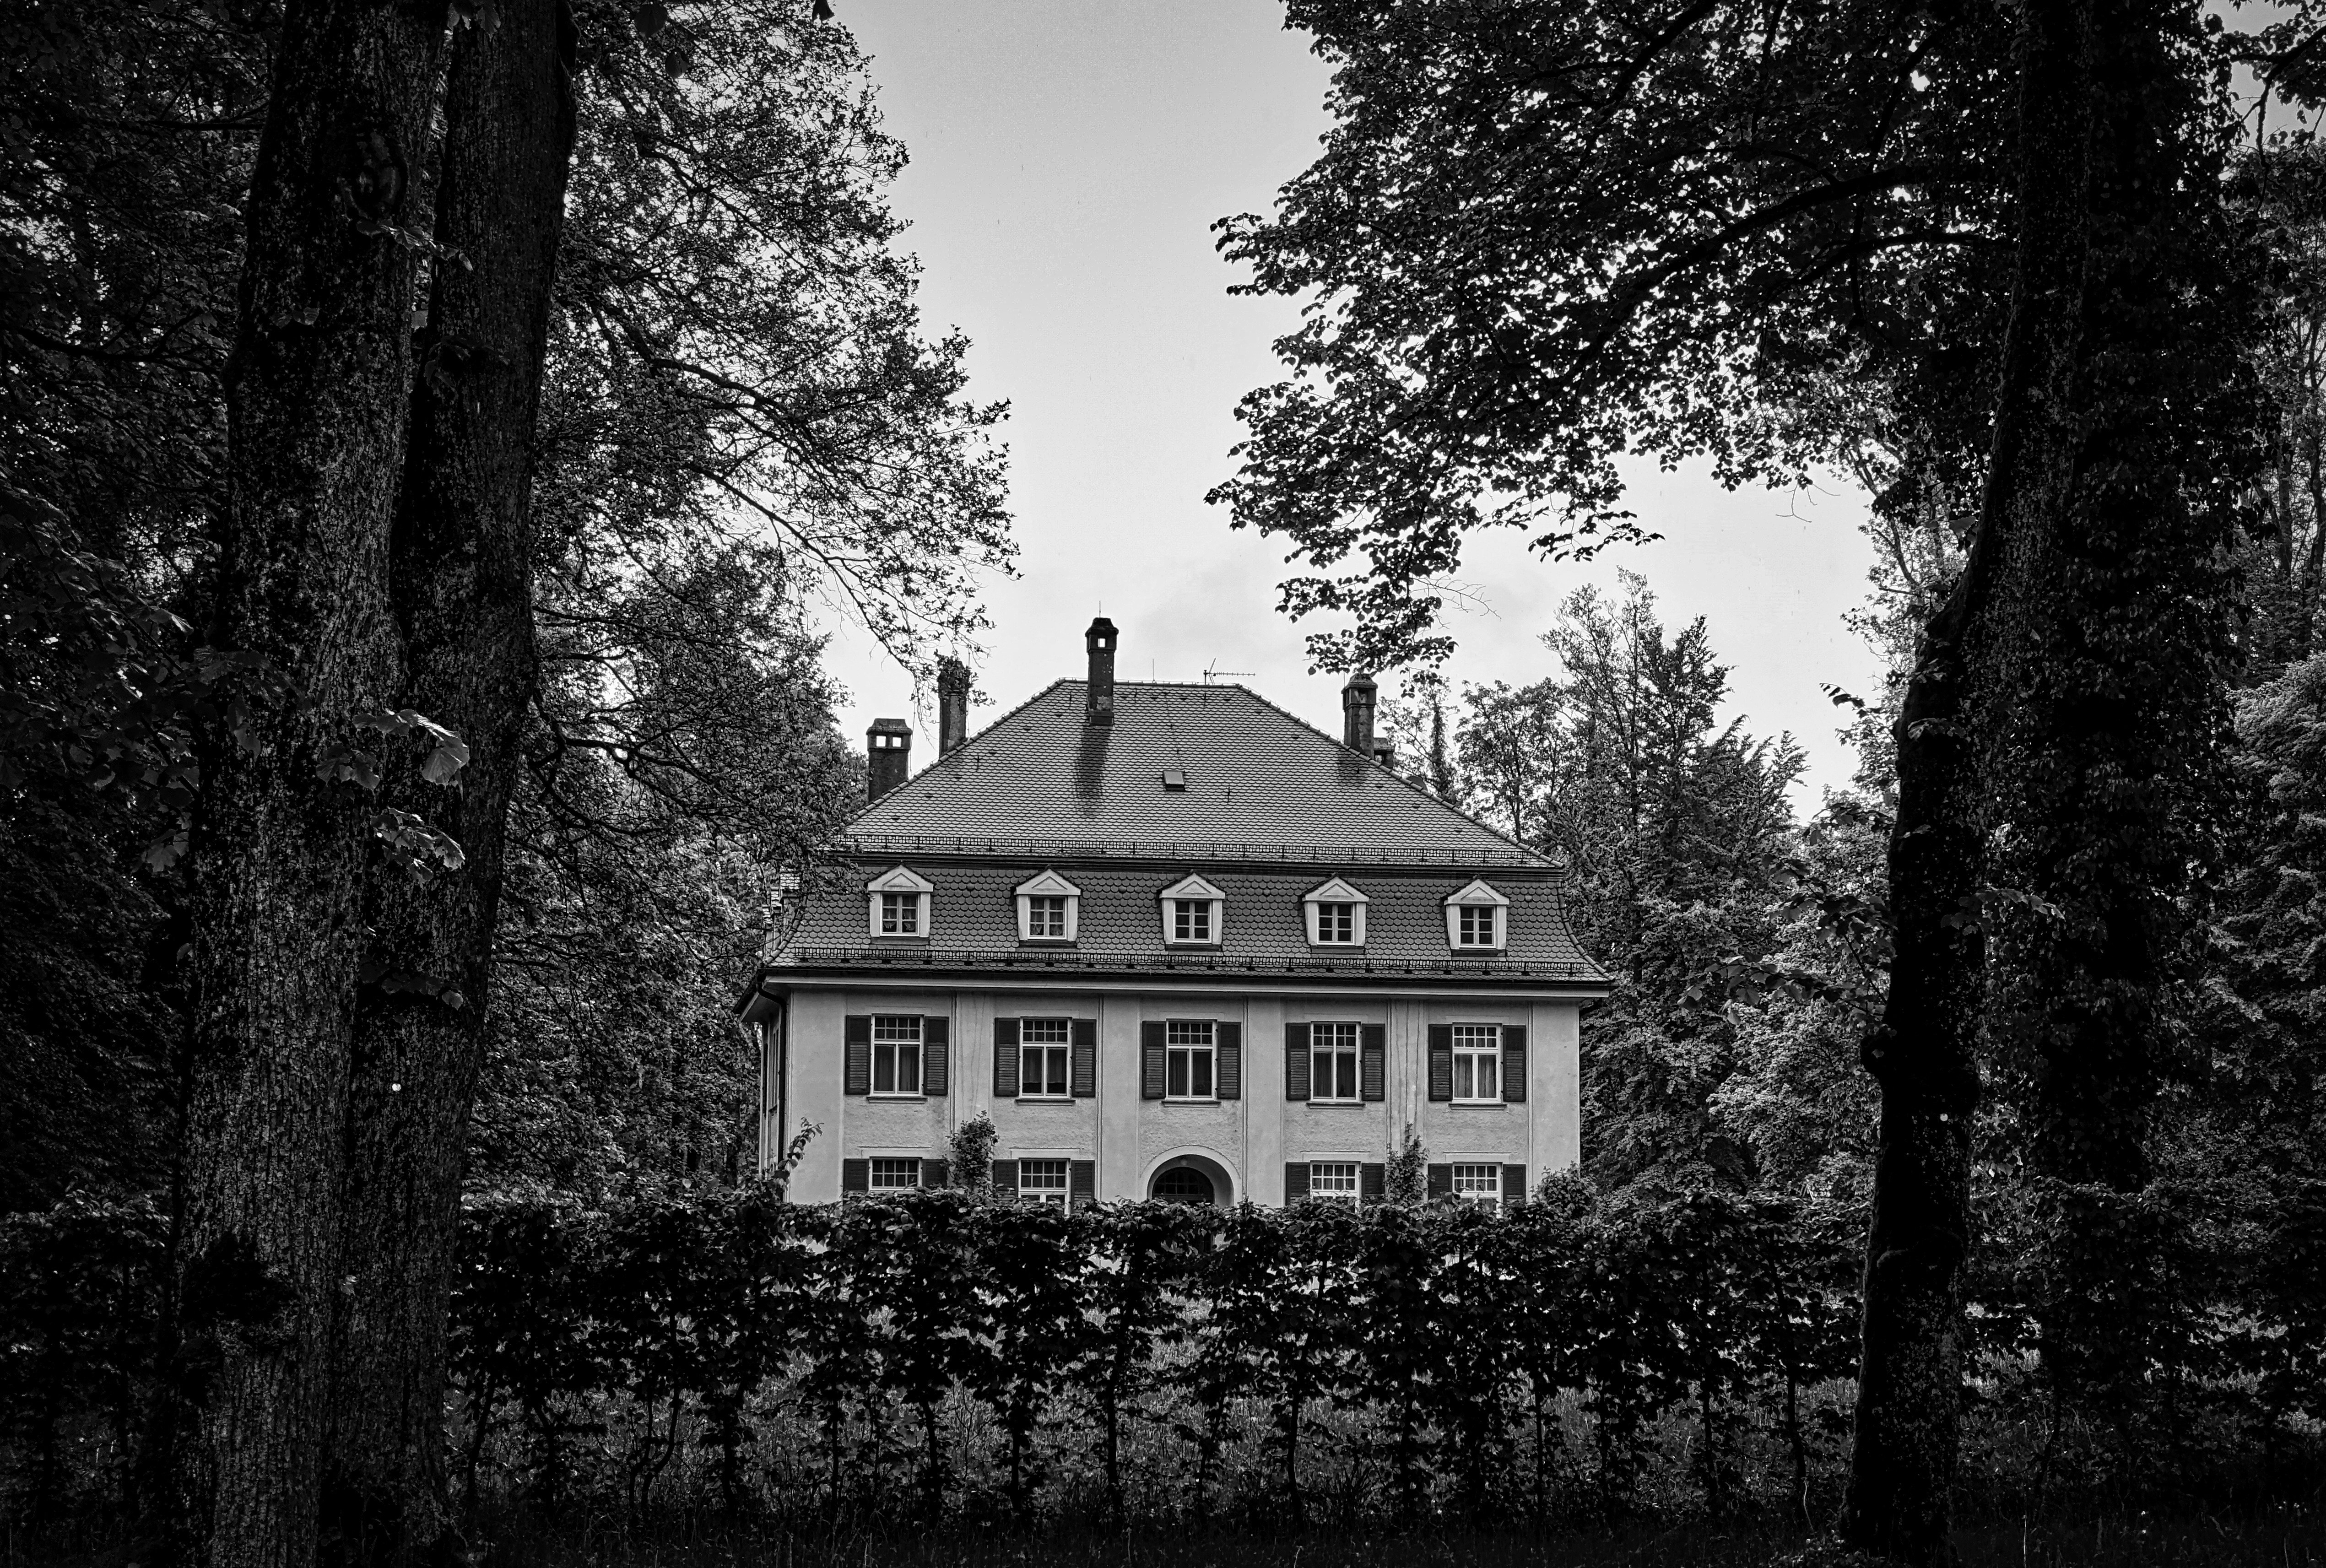 greyscale photo of 3 storey house